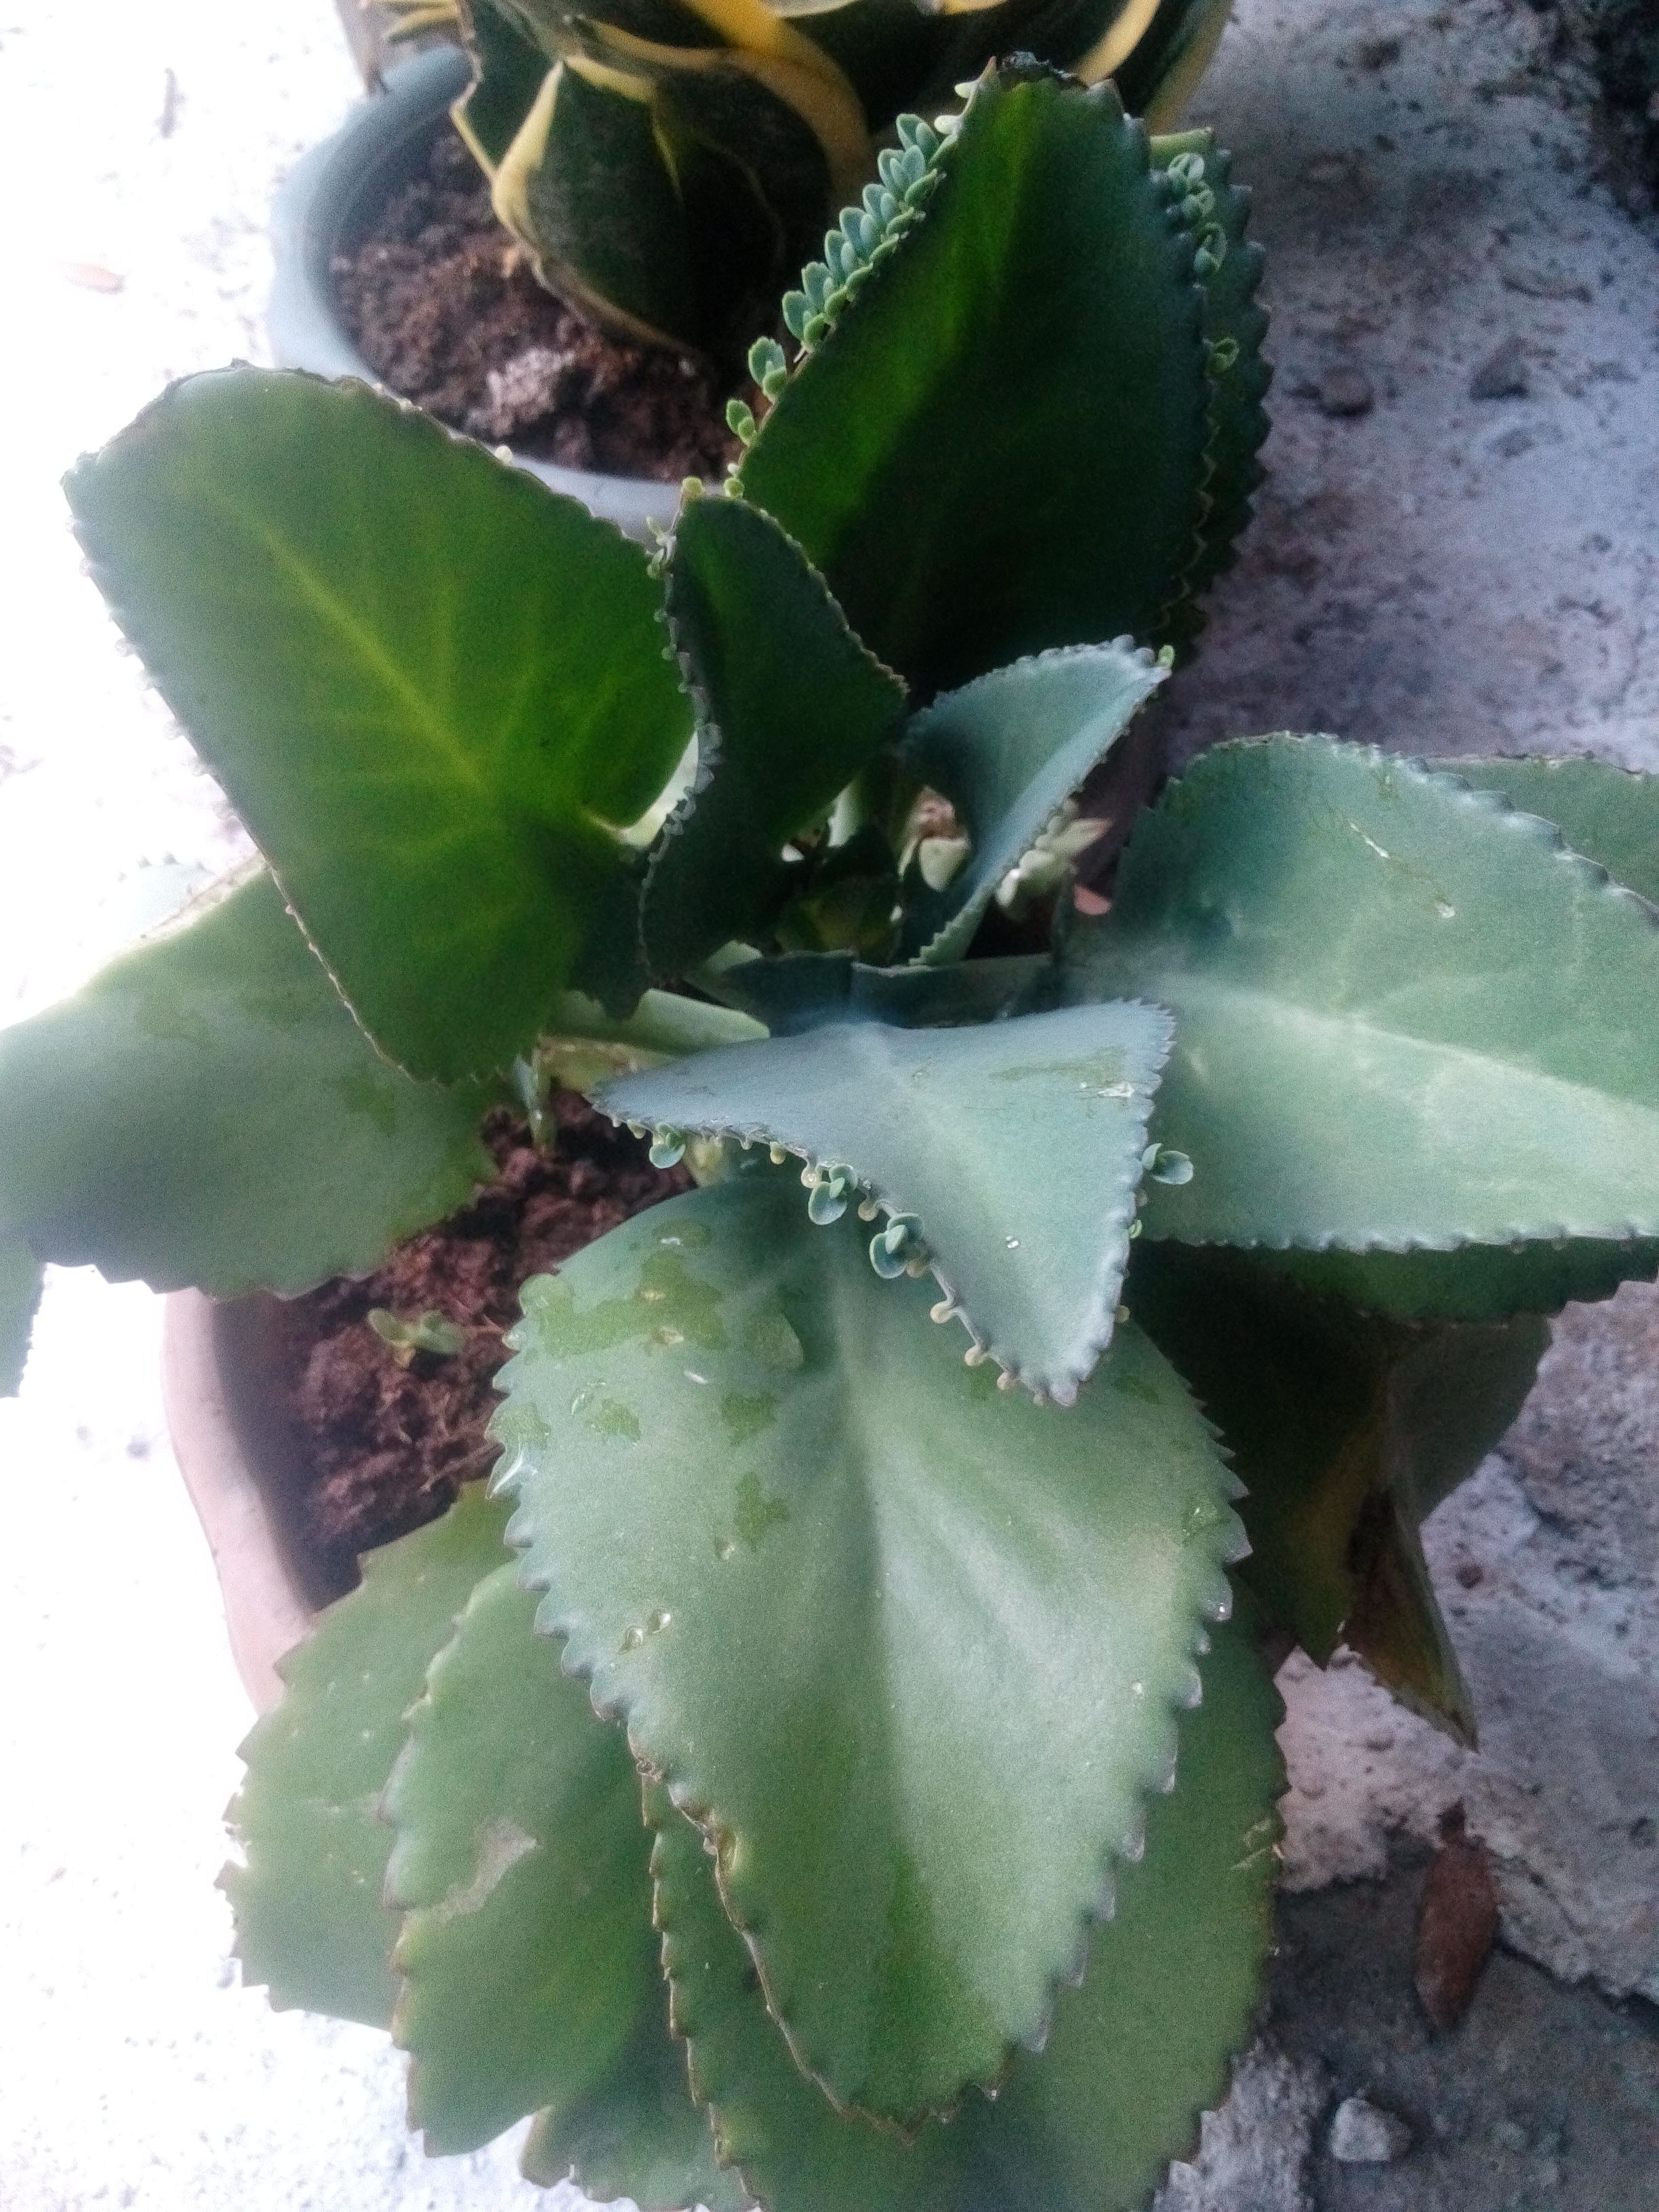 Kataka Taka Plant Miracle Plant Uses And Benefits Steemit